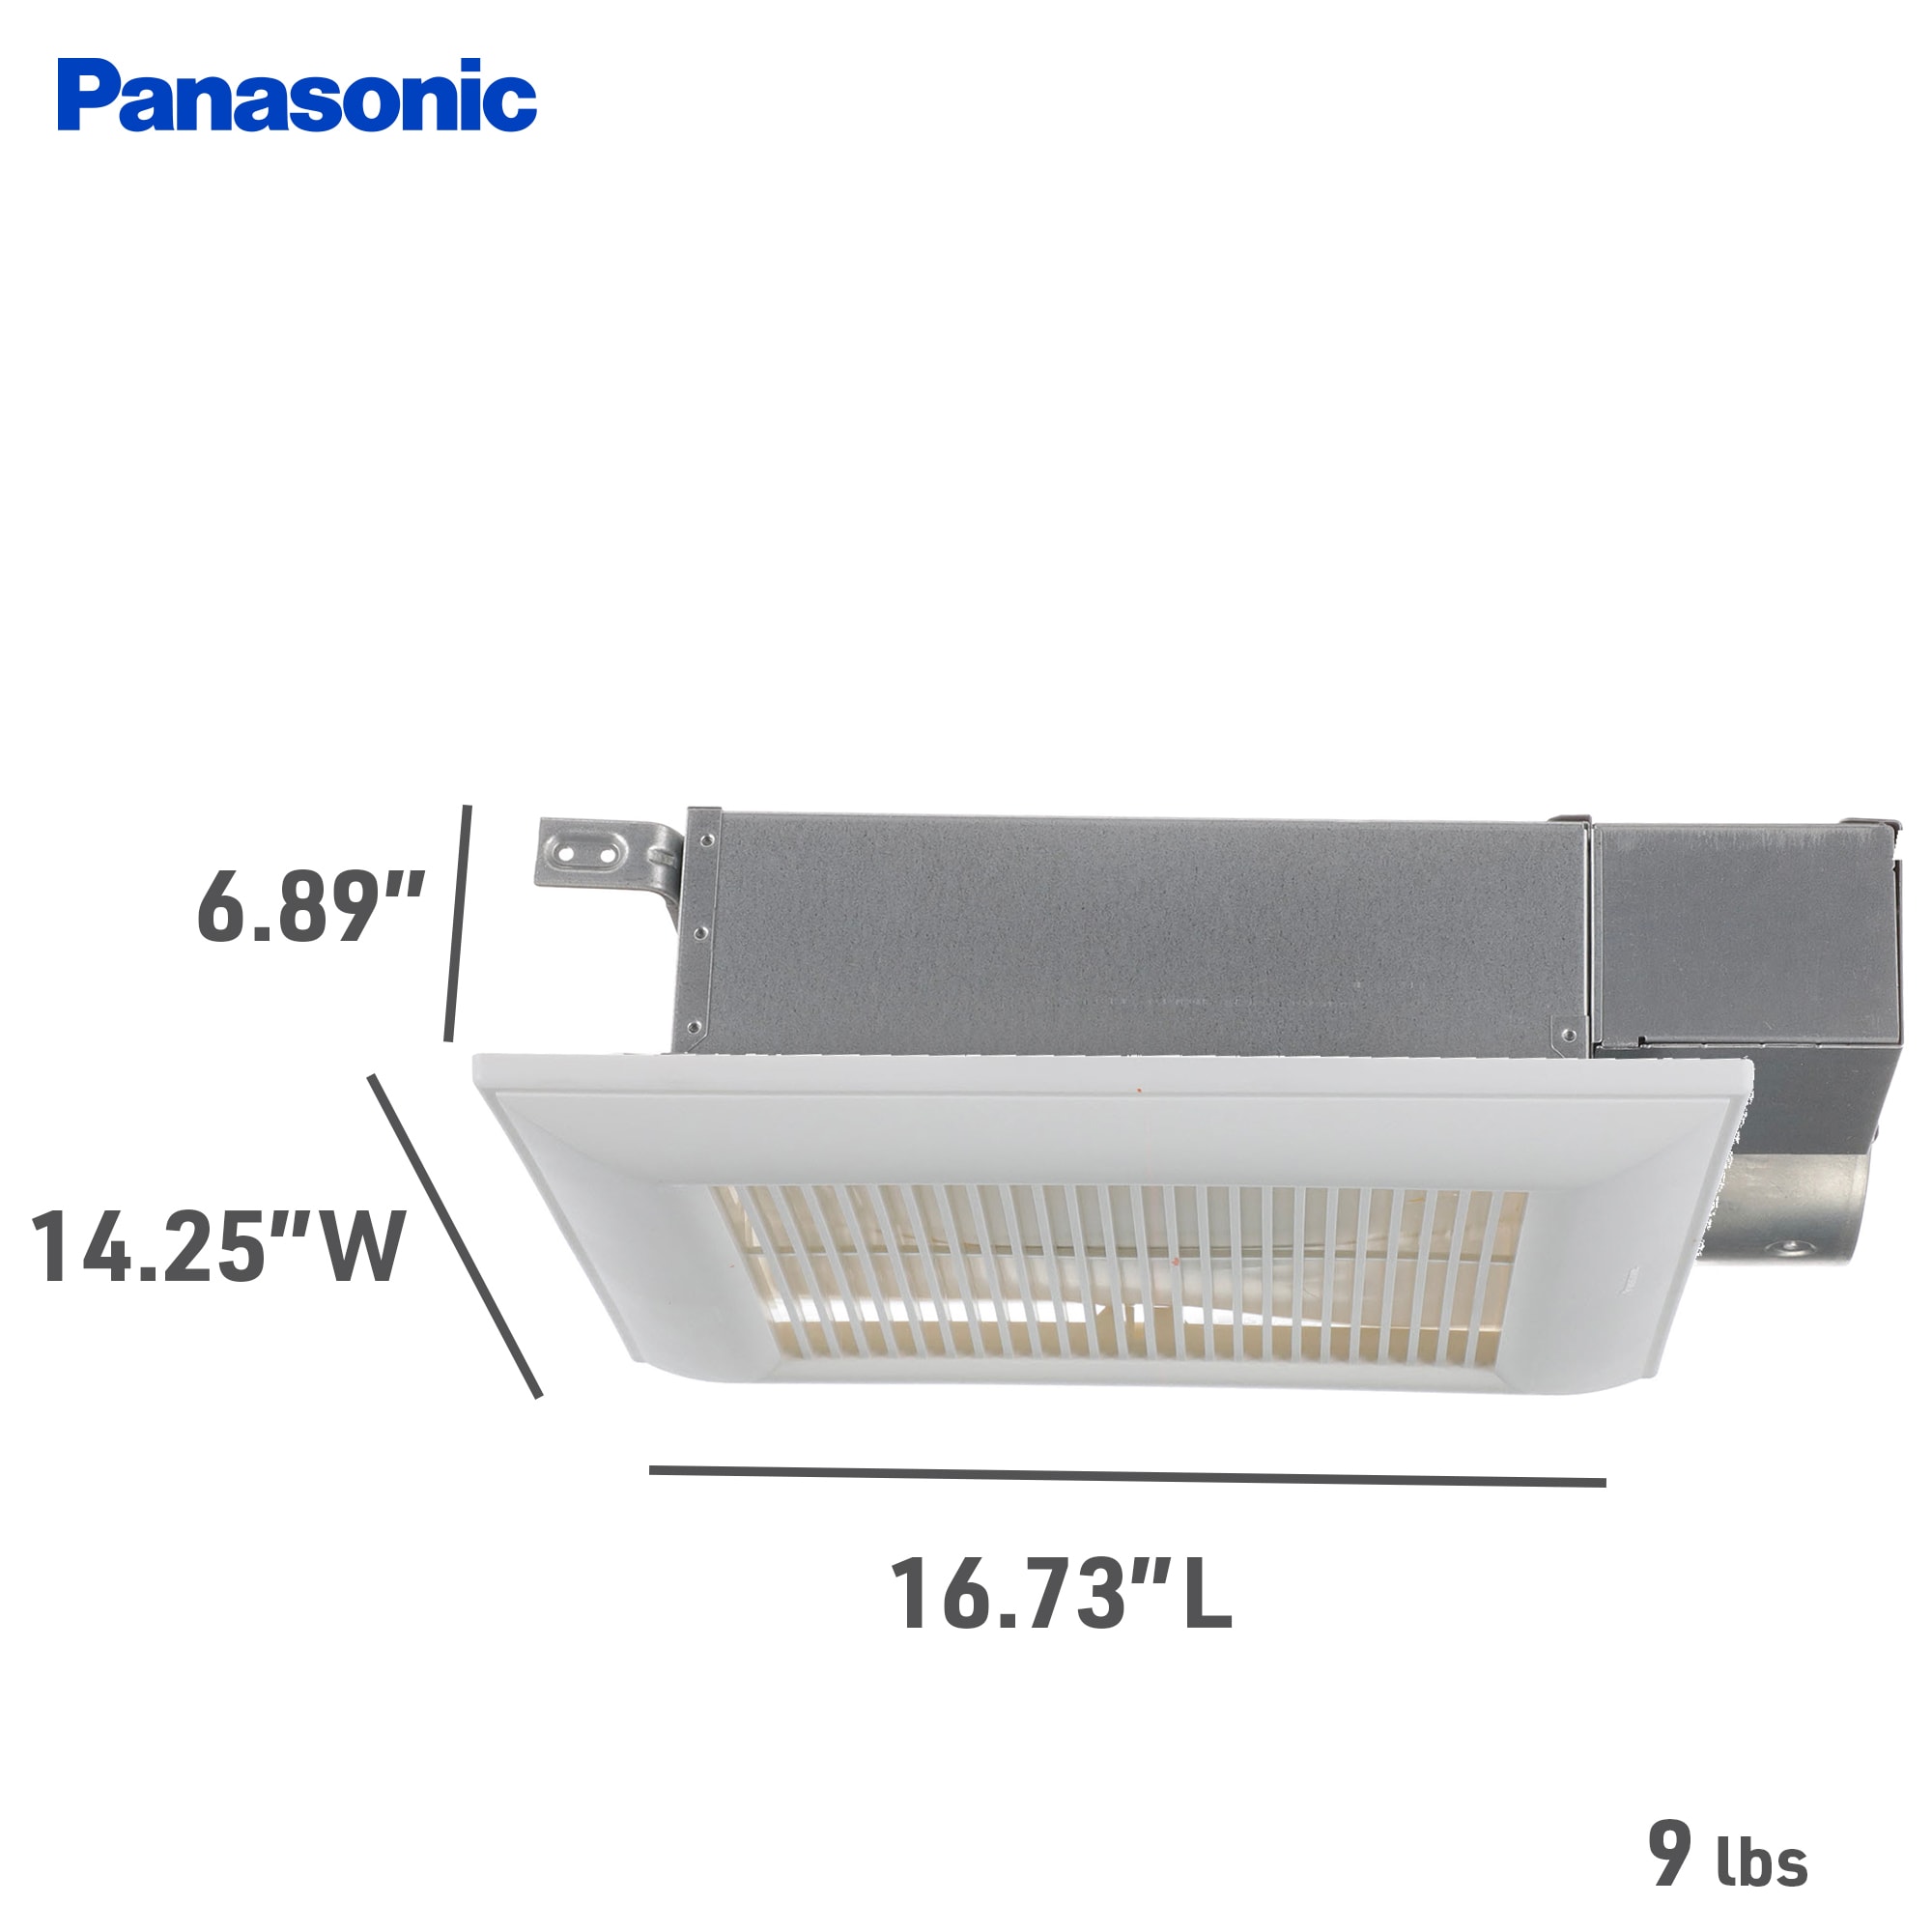 Panasonic WhisperValue 0.4-Sone 100-CFM White Bathroom Fan ENERGY STAR